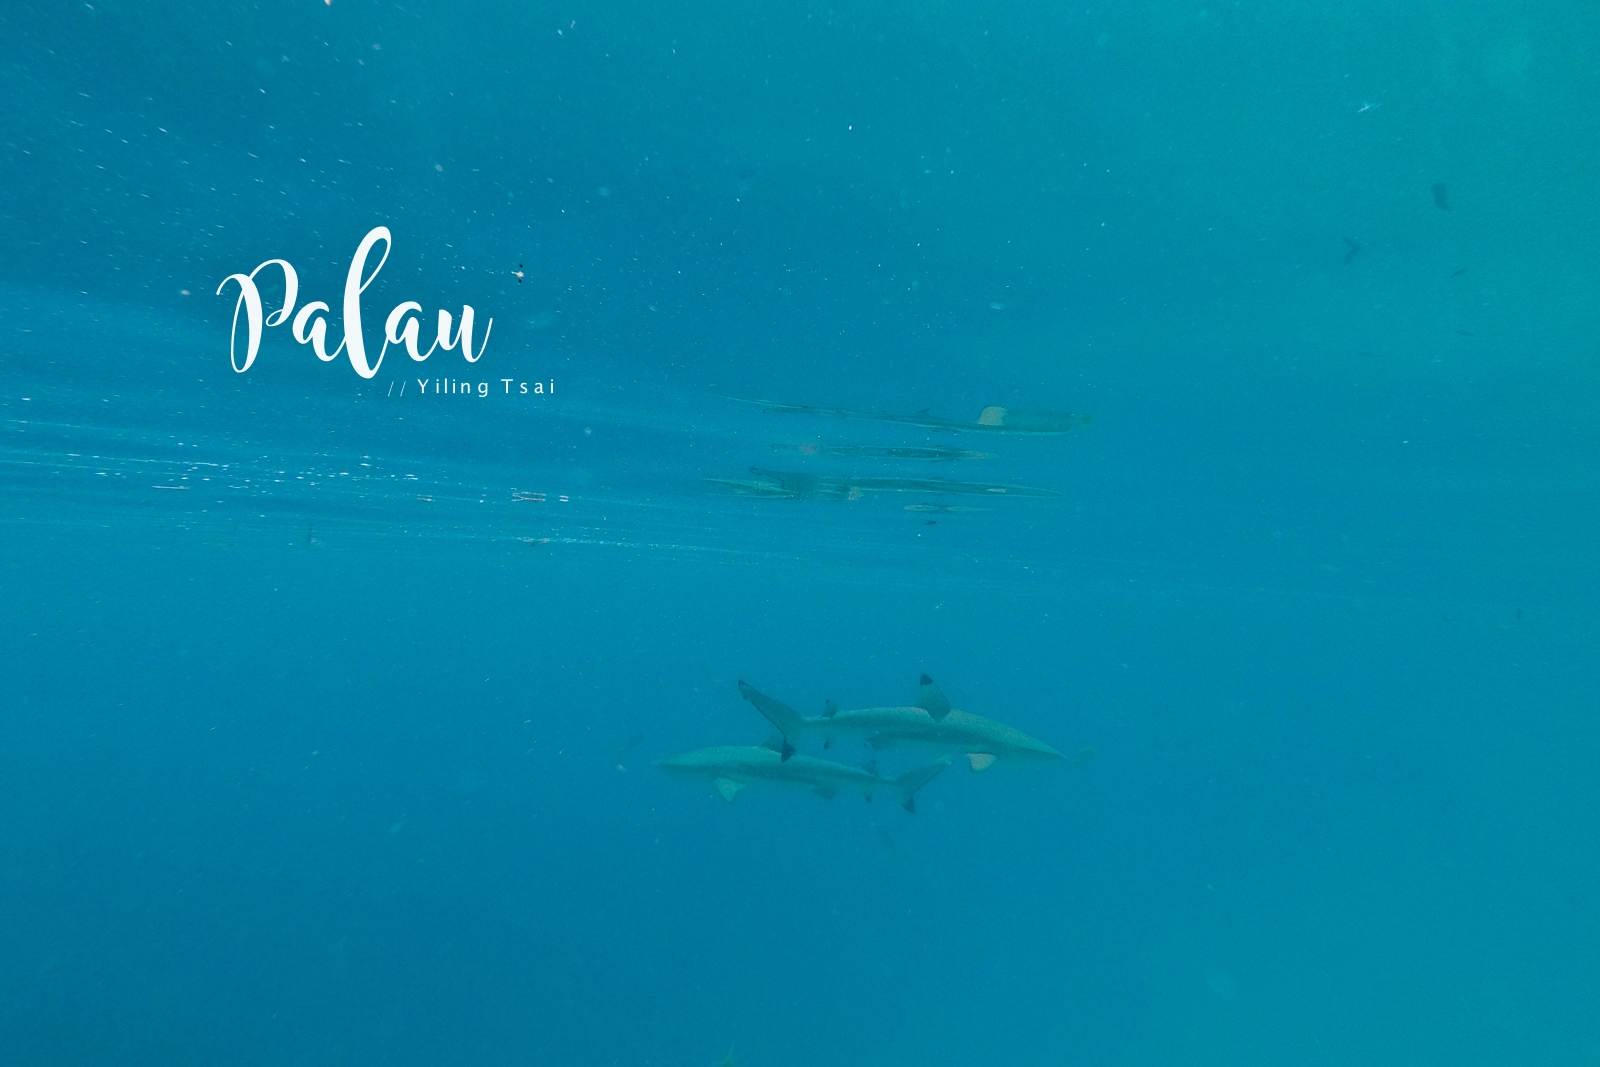 帛琉景點 鯊魚城 Shark City 鯊魚島 Ngermeaus 與鯊共泳的心驚時刻